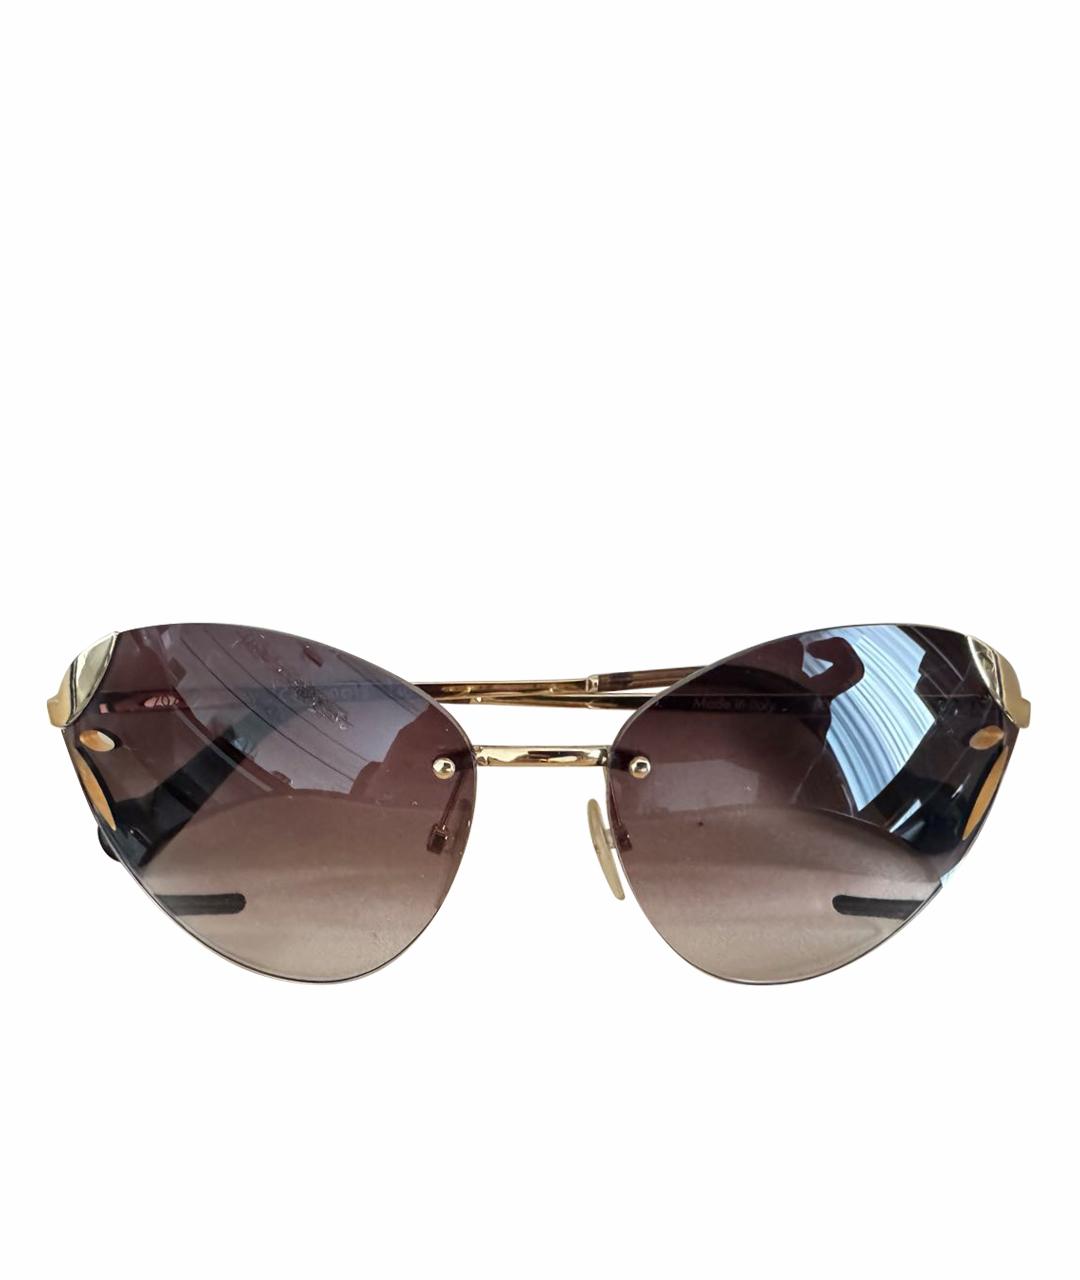 LOUIS VUITTON PRE-OWNED Золотые металлические солнцезащитные очки, фото 1